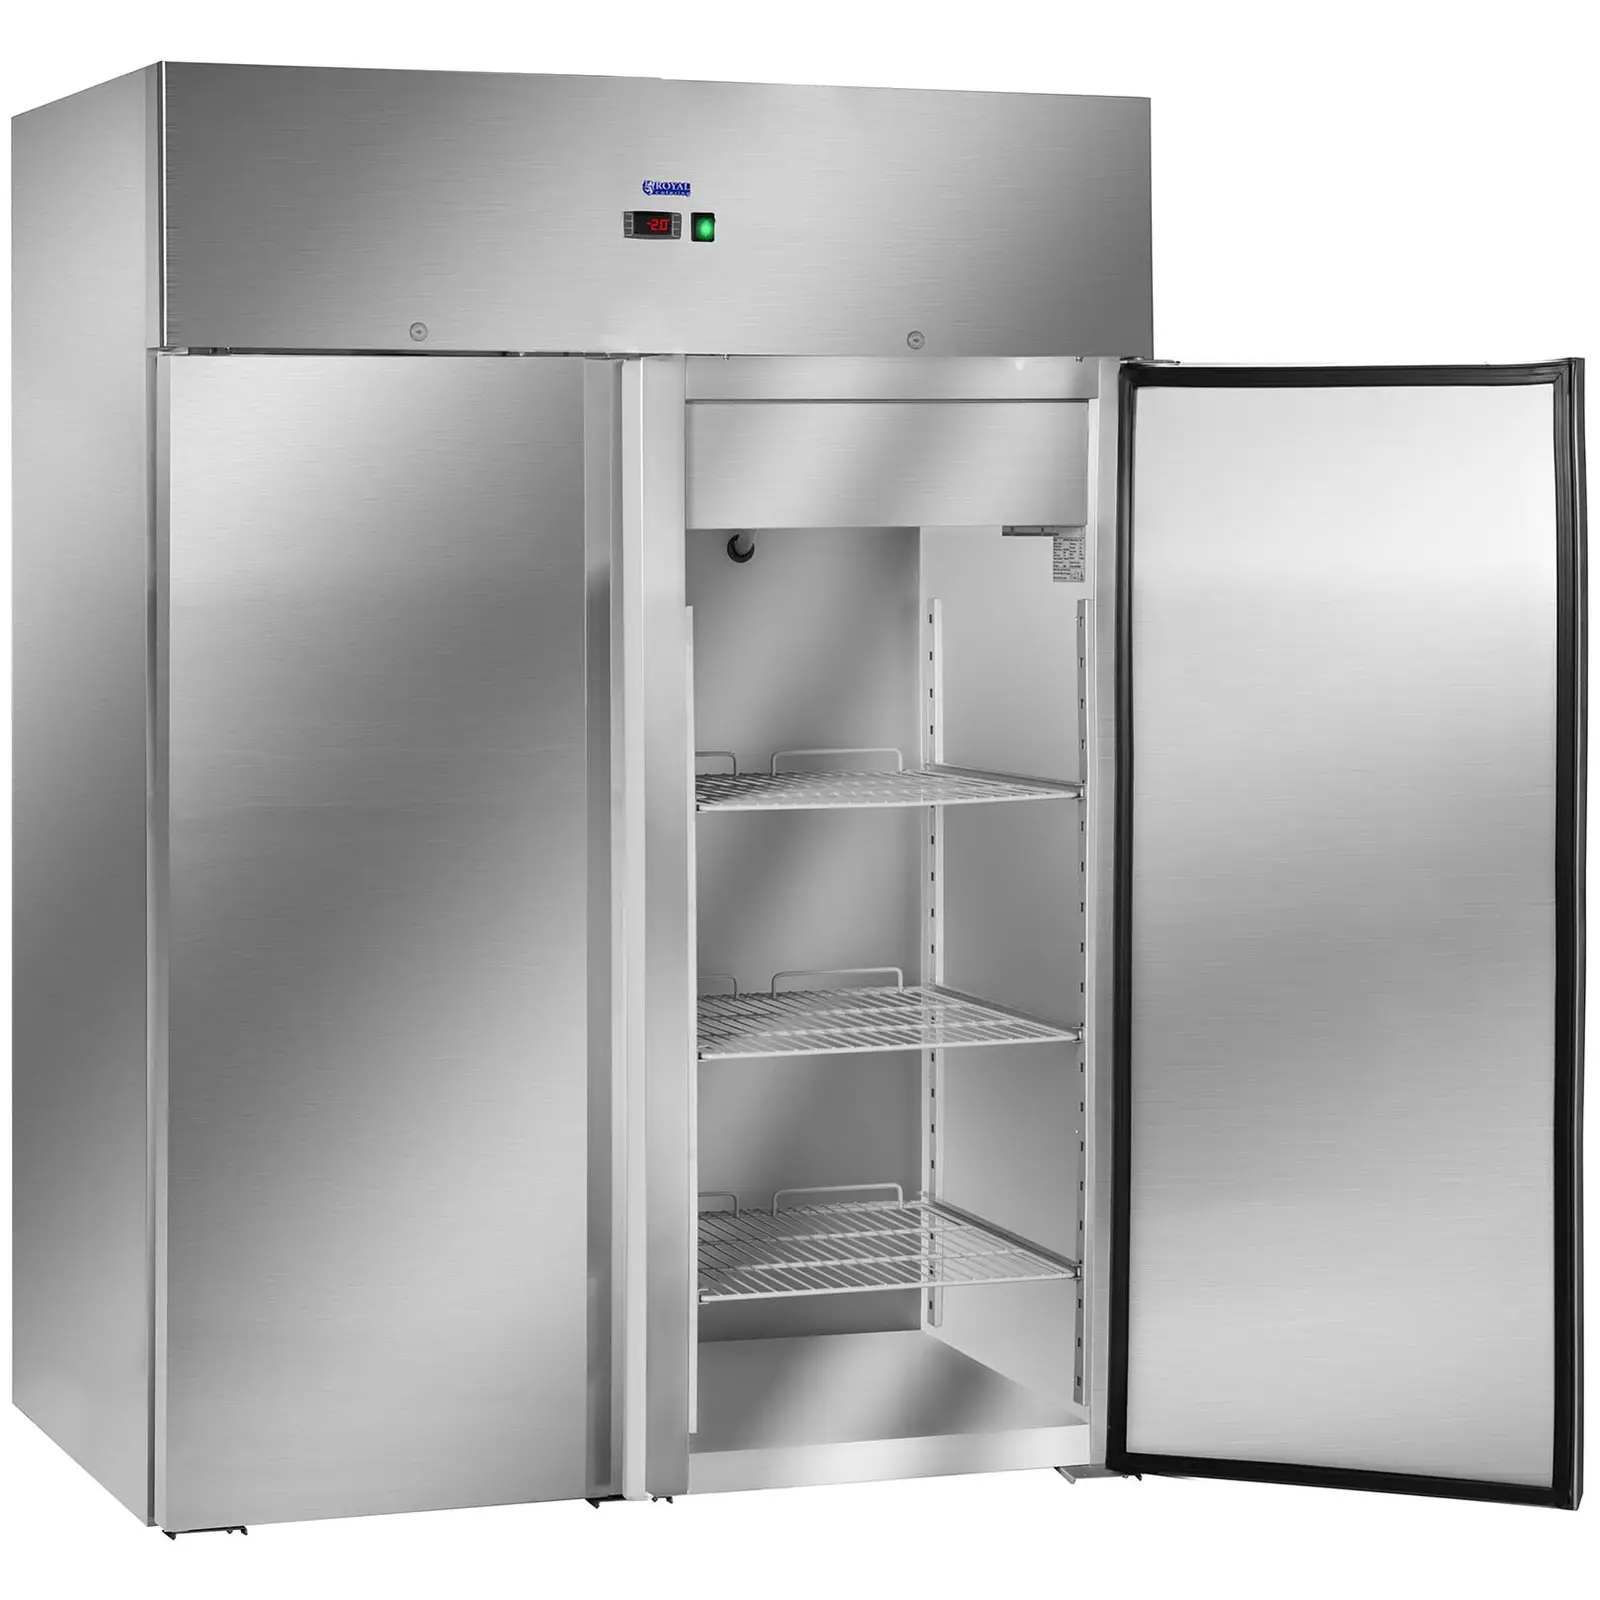 Kaksiovinen jääkaappi - 1 168 l